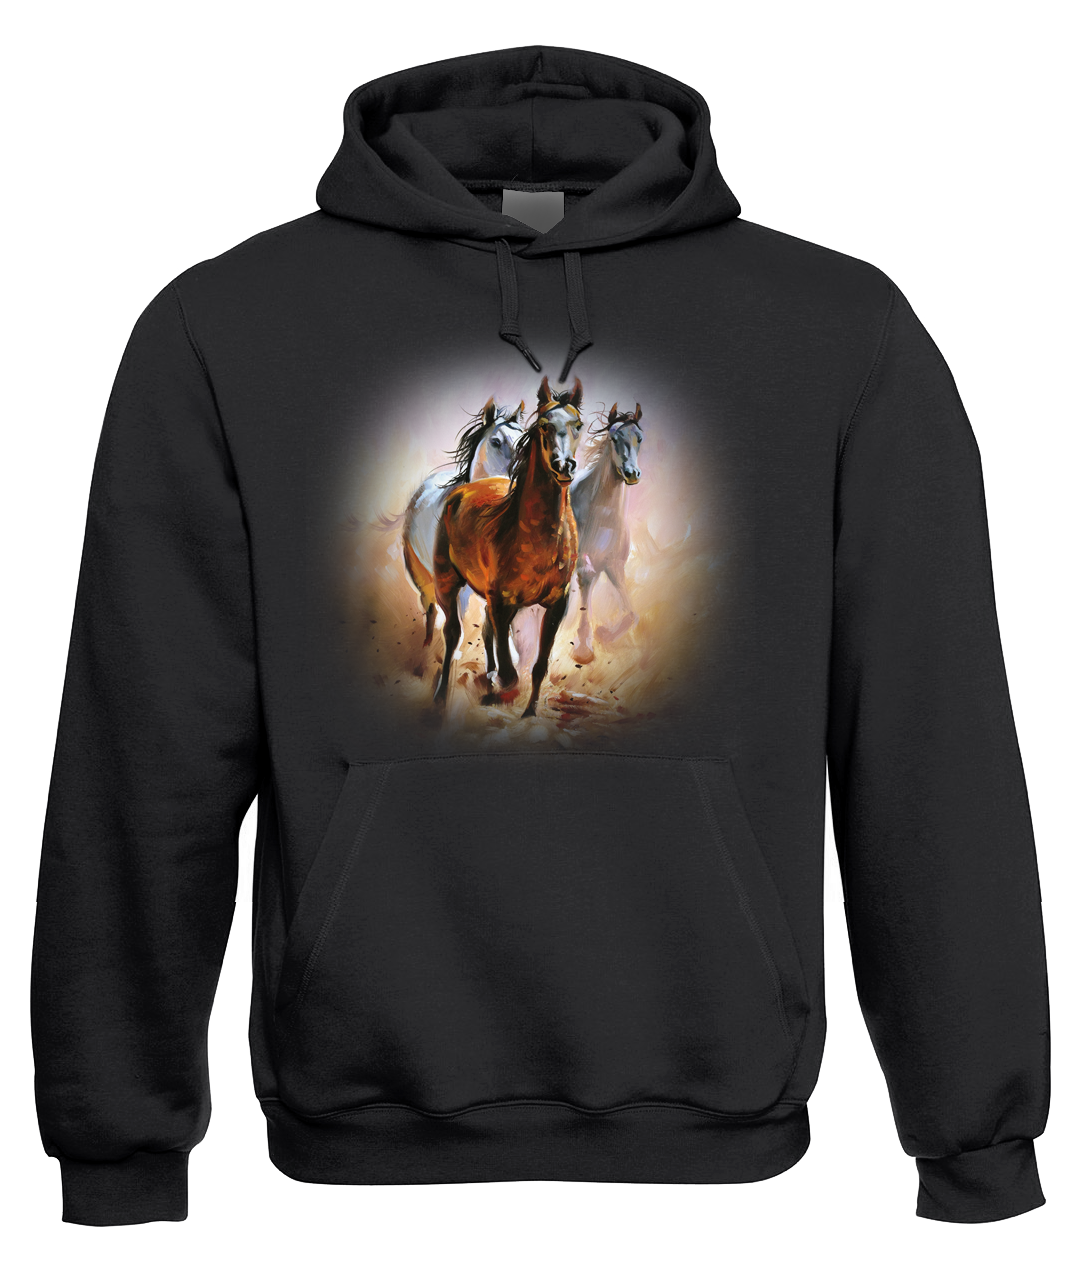 Mikina s koněm - Malované koně Velikost: L, Barva: Černá